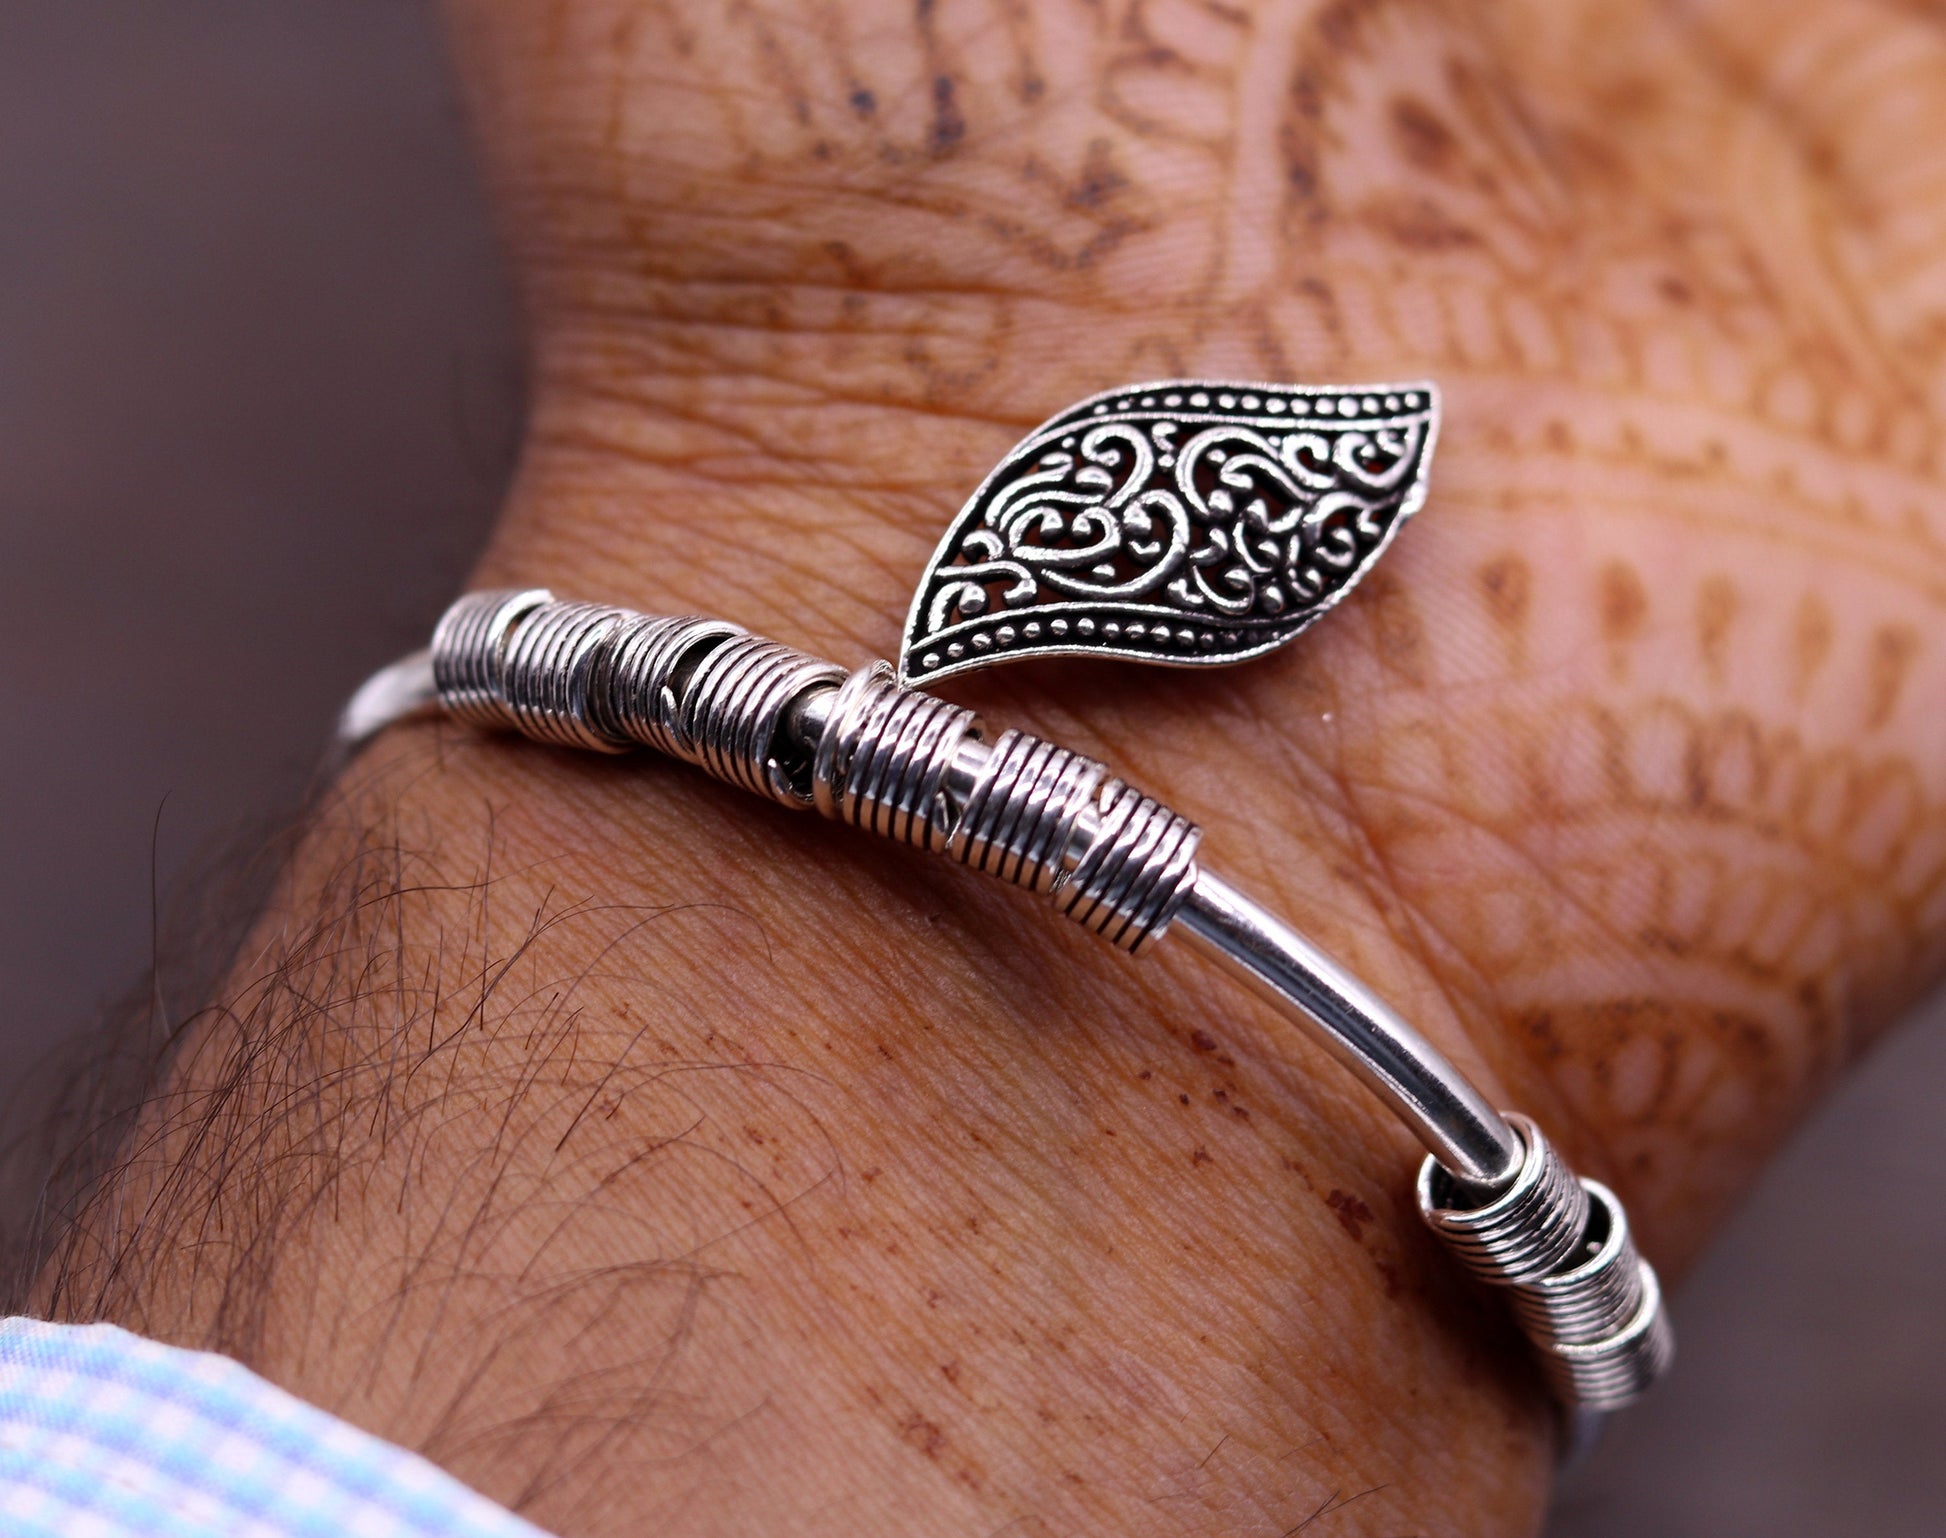 Vintage antique design 925 sterling silver handmade fabulous flower shape open face flexible charm bracelet kada bangle girl's gift nsk153 - TRIBAL ORNAMENTS